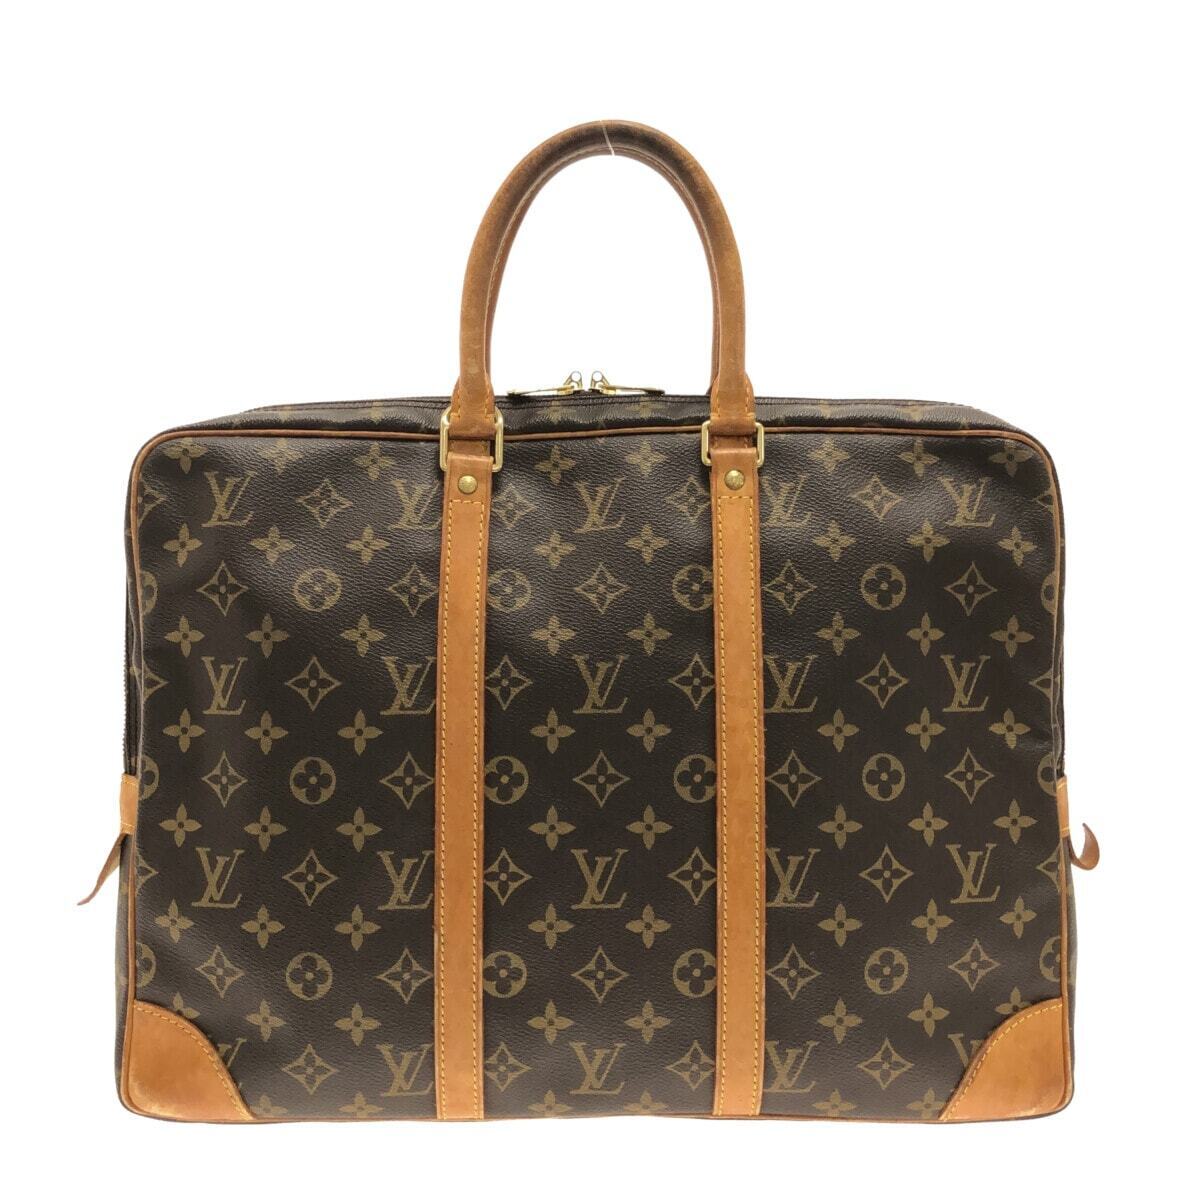 LOUIS VUITTON Porte Documents Voyage Business Briefcase Hand Bag